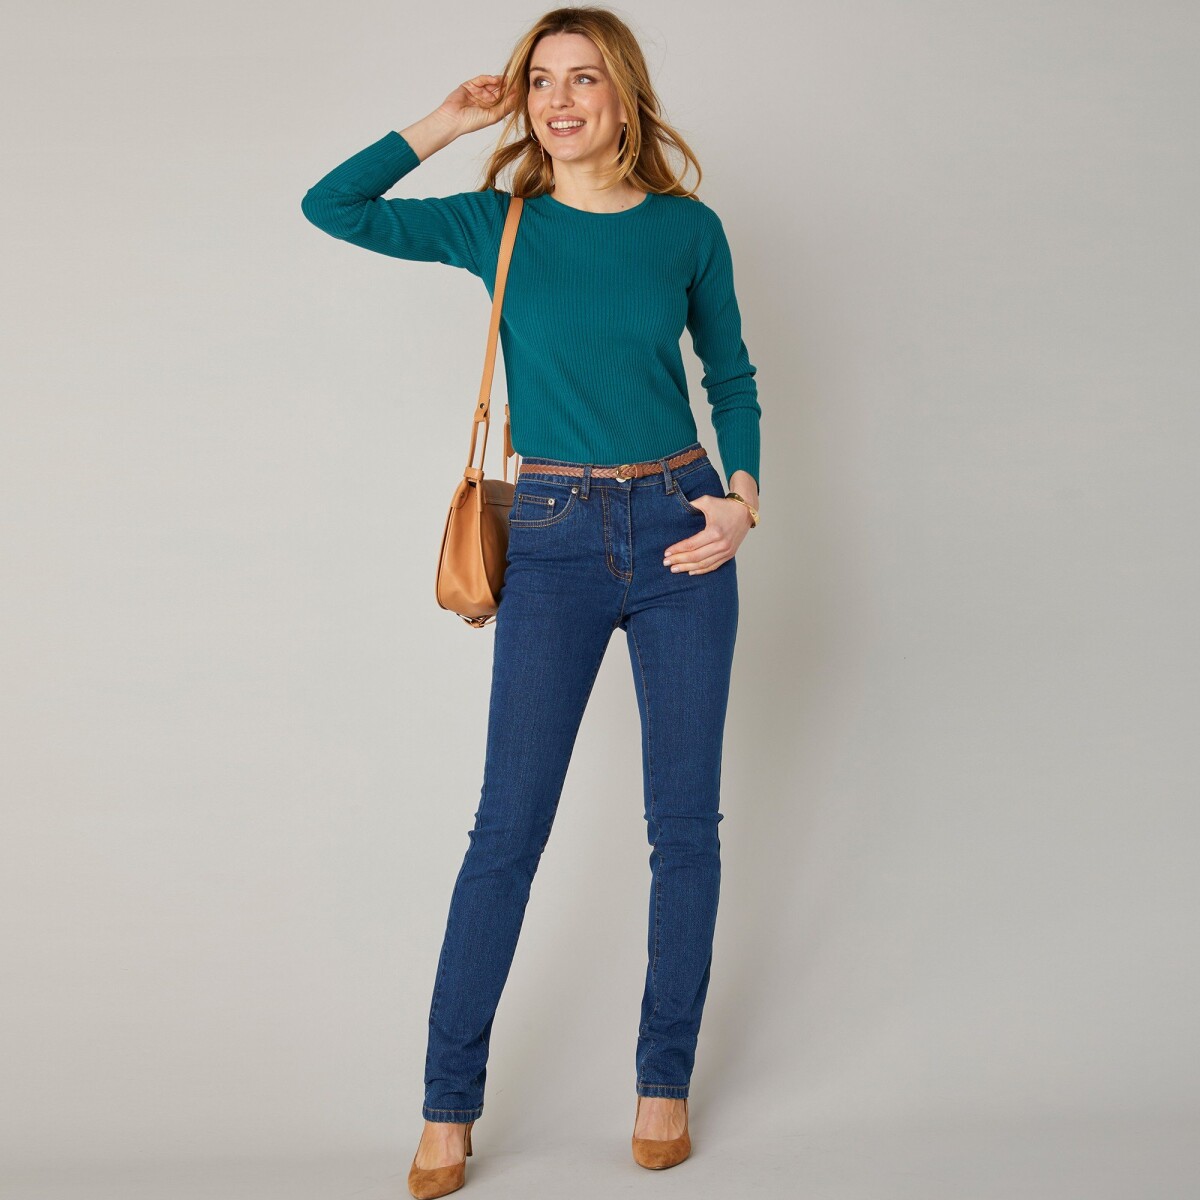 Blancheporte Strečové rovné džíny, střední výška postavy tmavě modrá 40